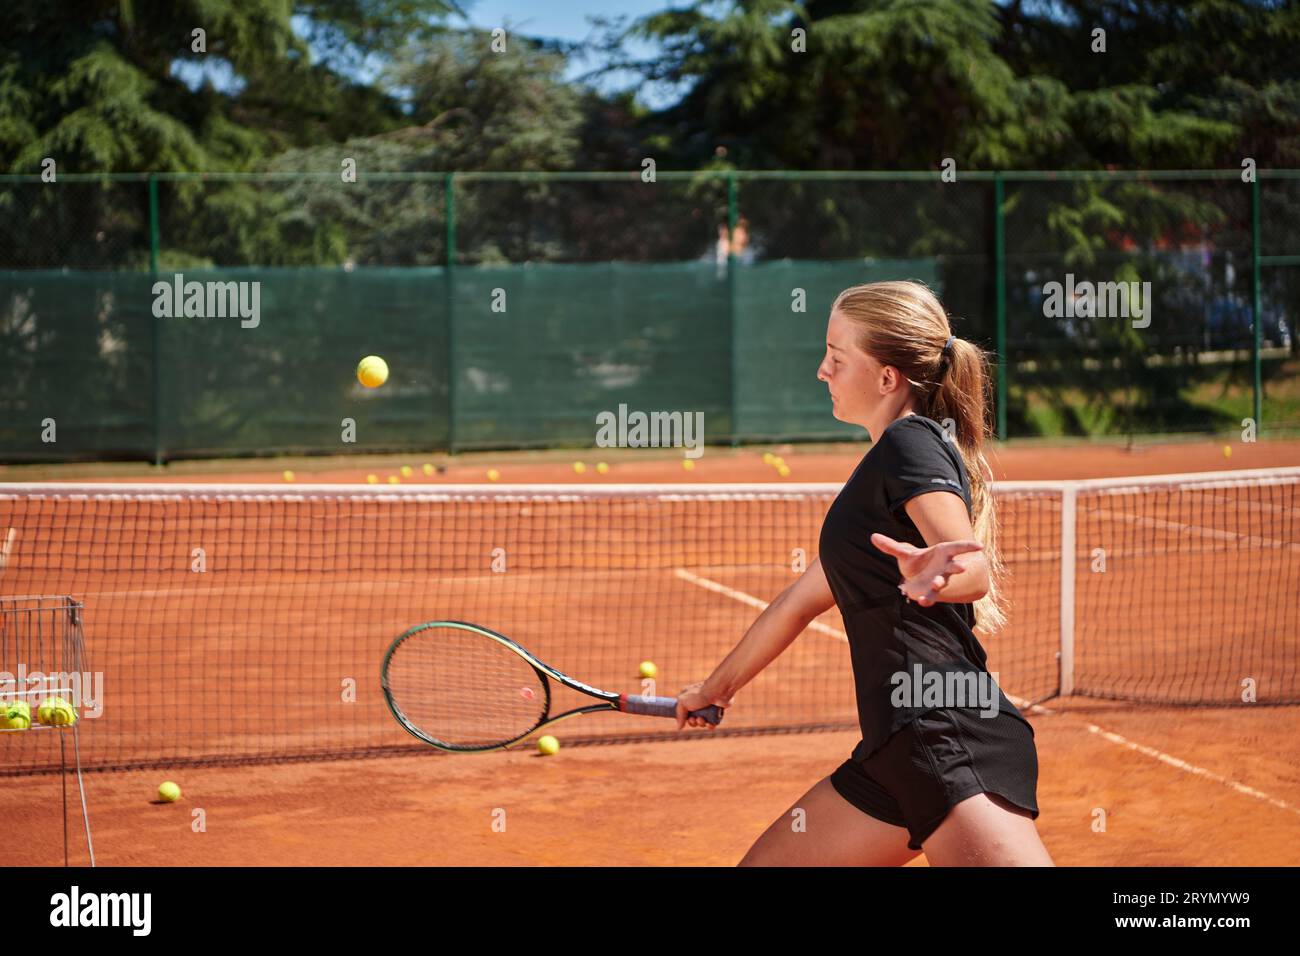 Ein junges Mädchen, das professionelle Tennisfähigkeiten in einem Wettkampf an einem sonnigen Tag zeigt, umgeben von der modernen Ästhetik von A Stockfoto